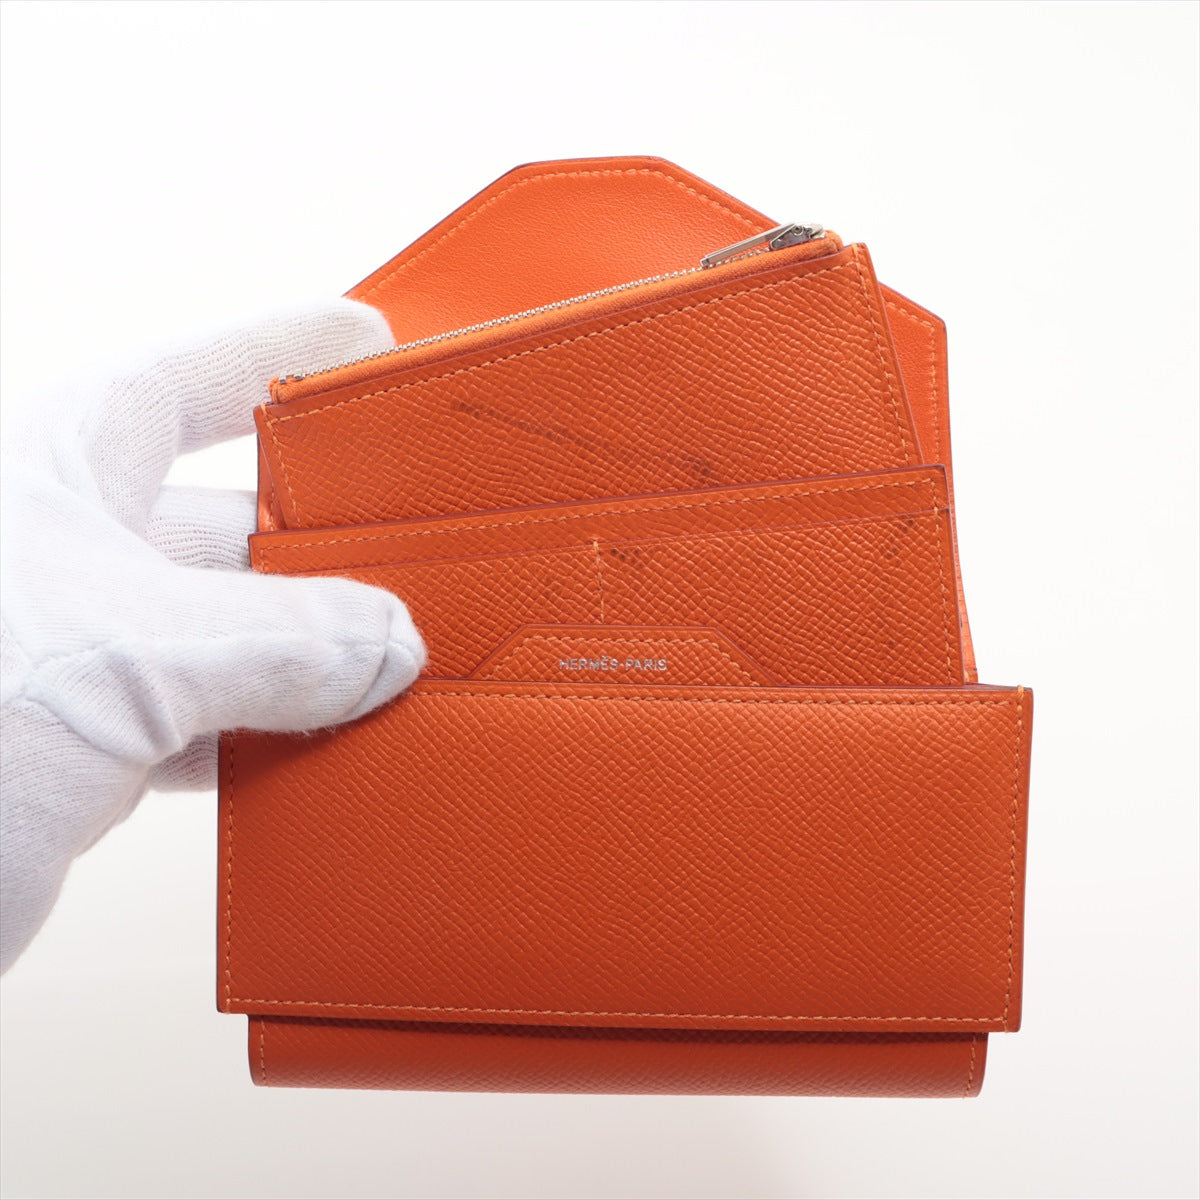 Hermès Passant Compact Veau Epsom Wallet Orange Silver Metal fittings X: 2016